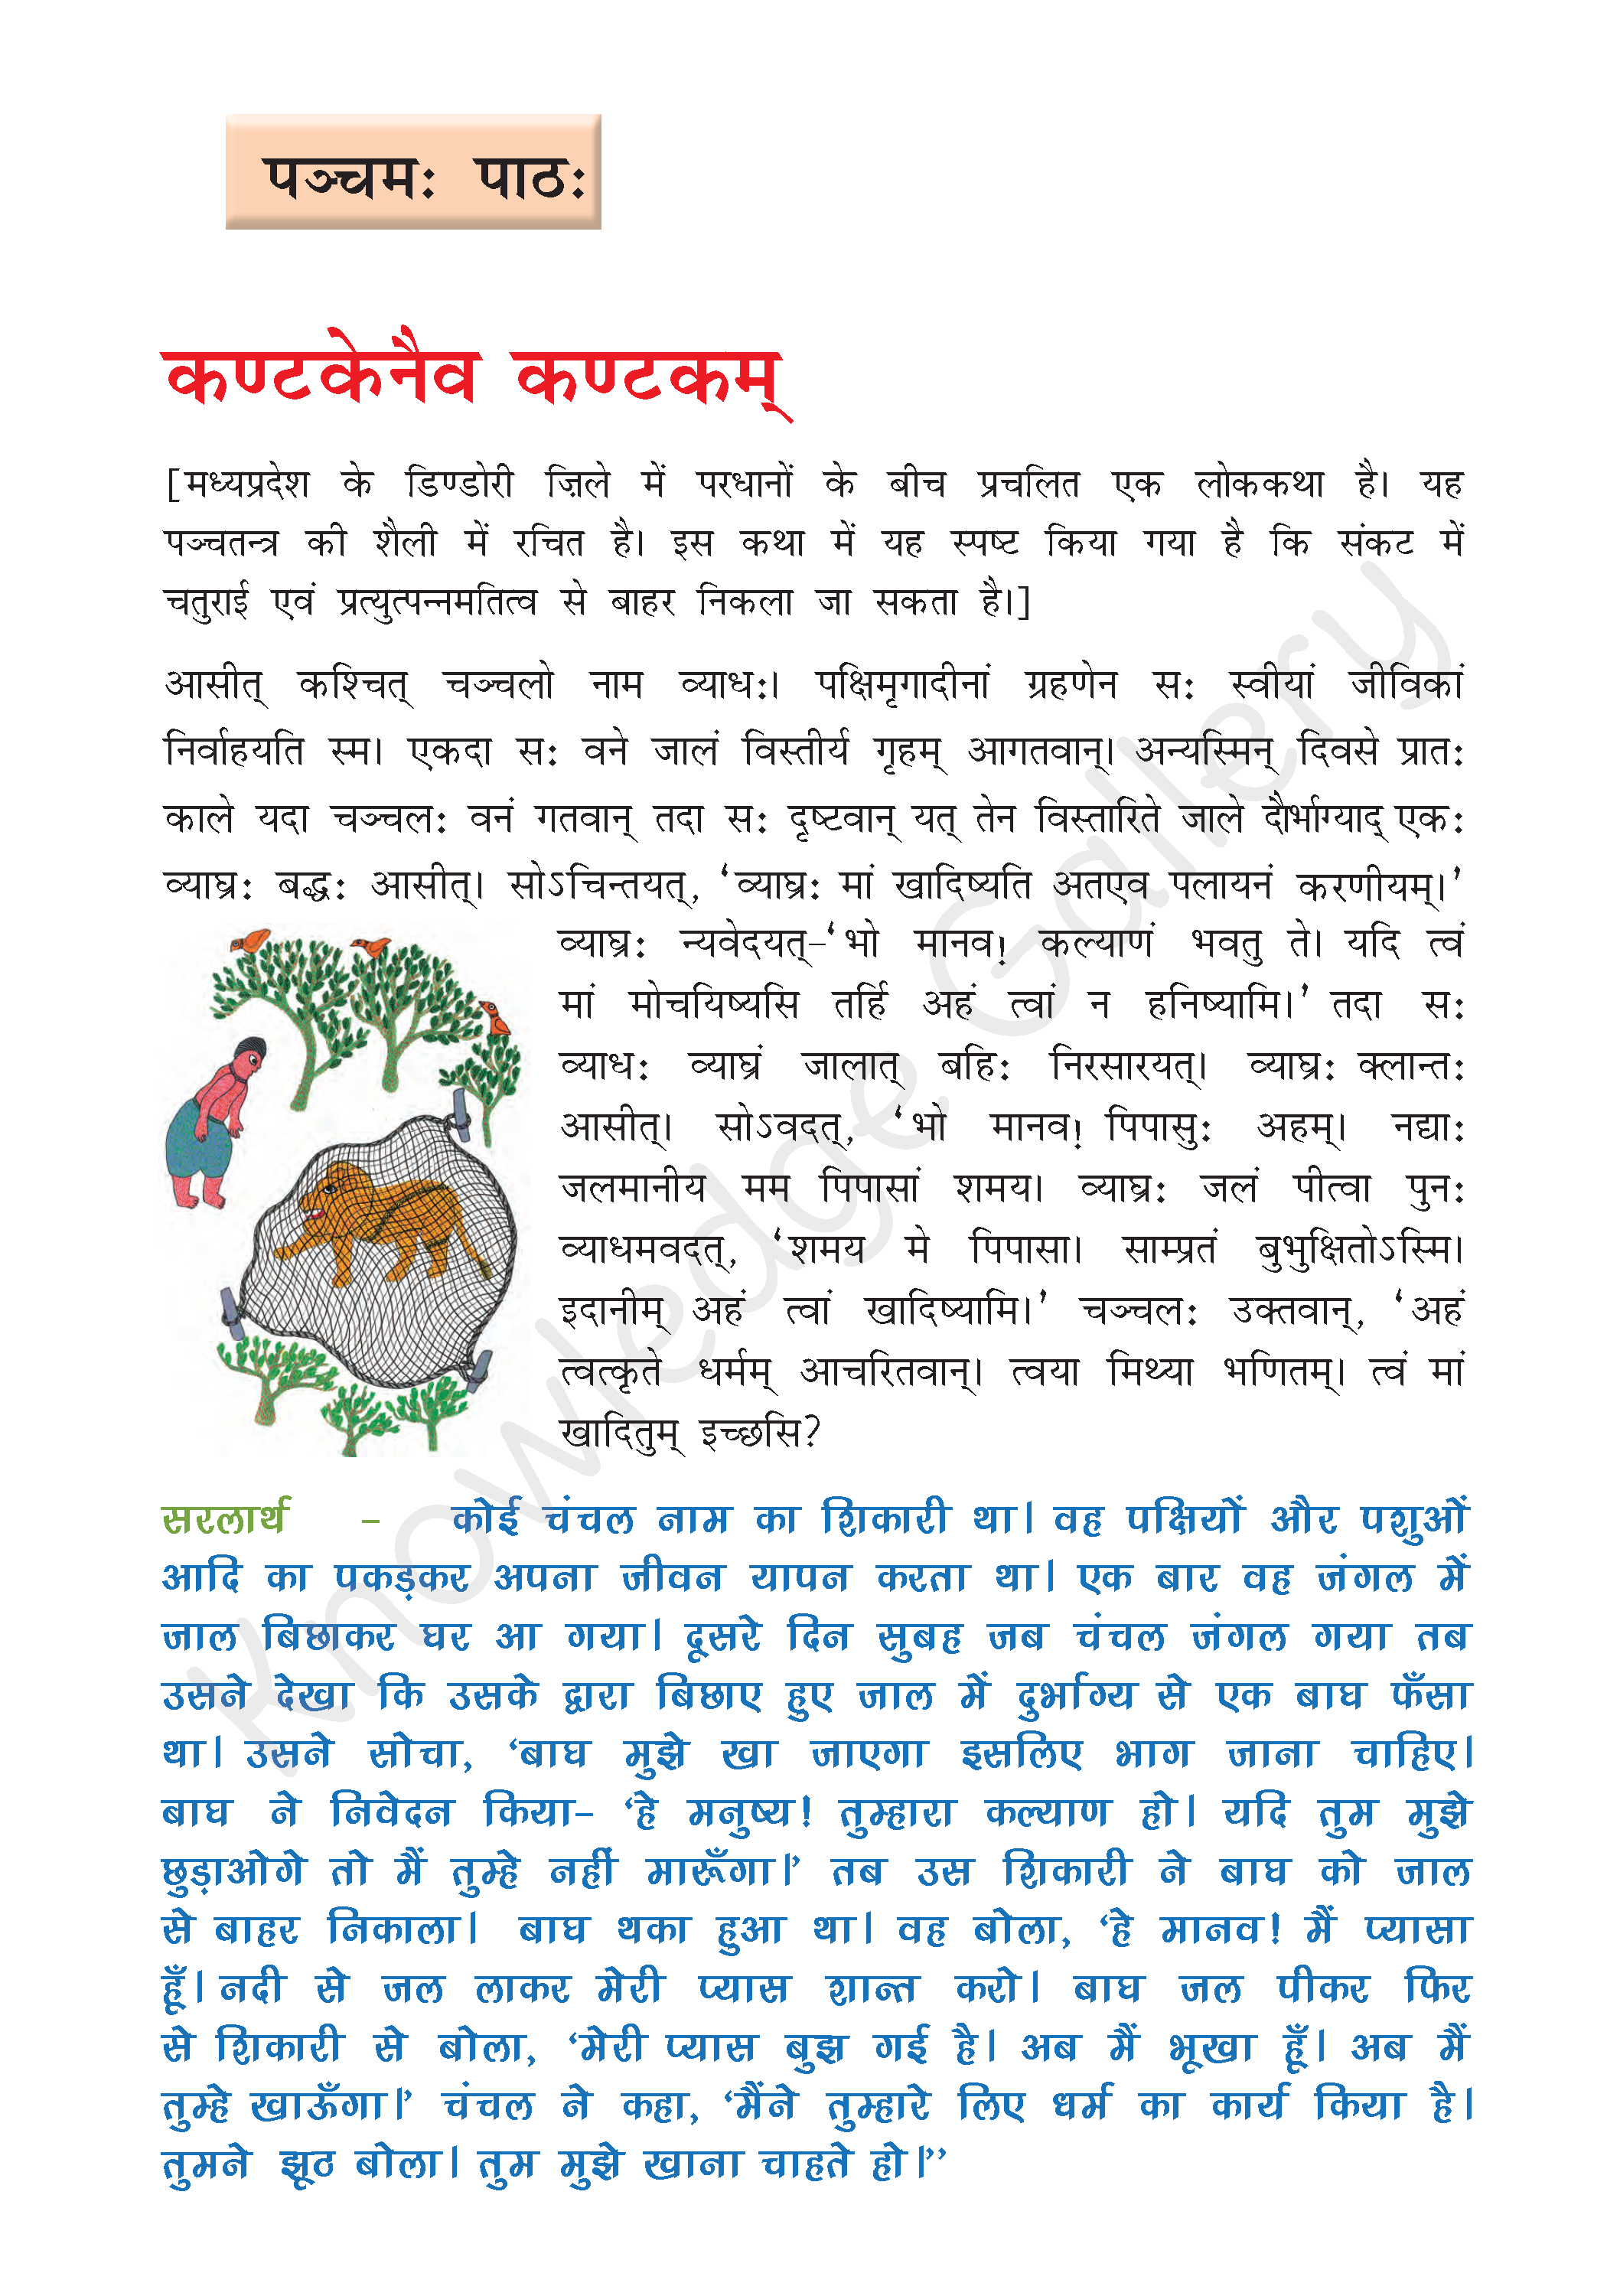 NCERT Solution For Class 8 Sanskrit Chapter 5 part 1